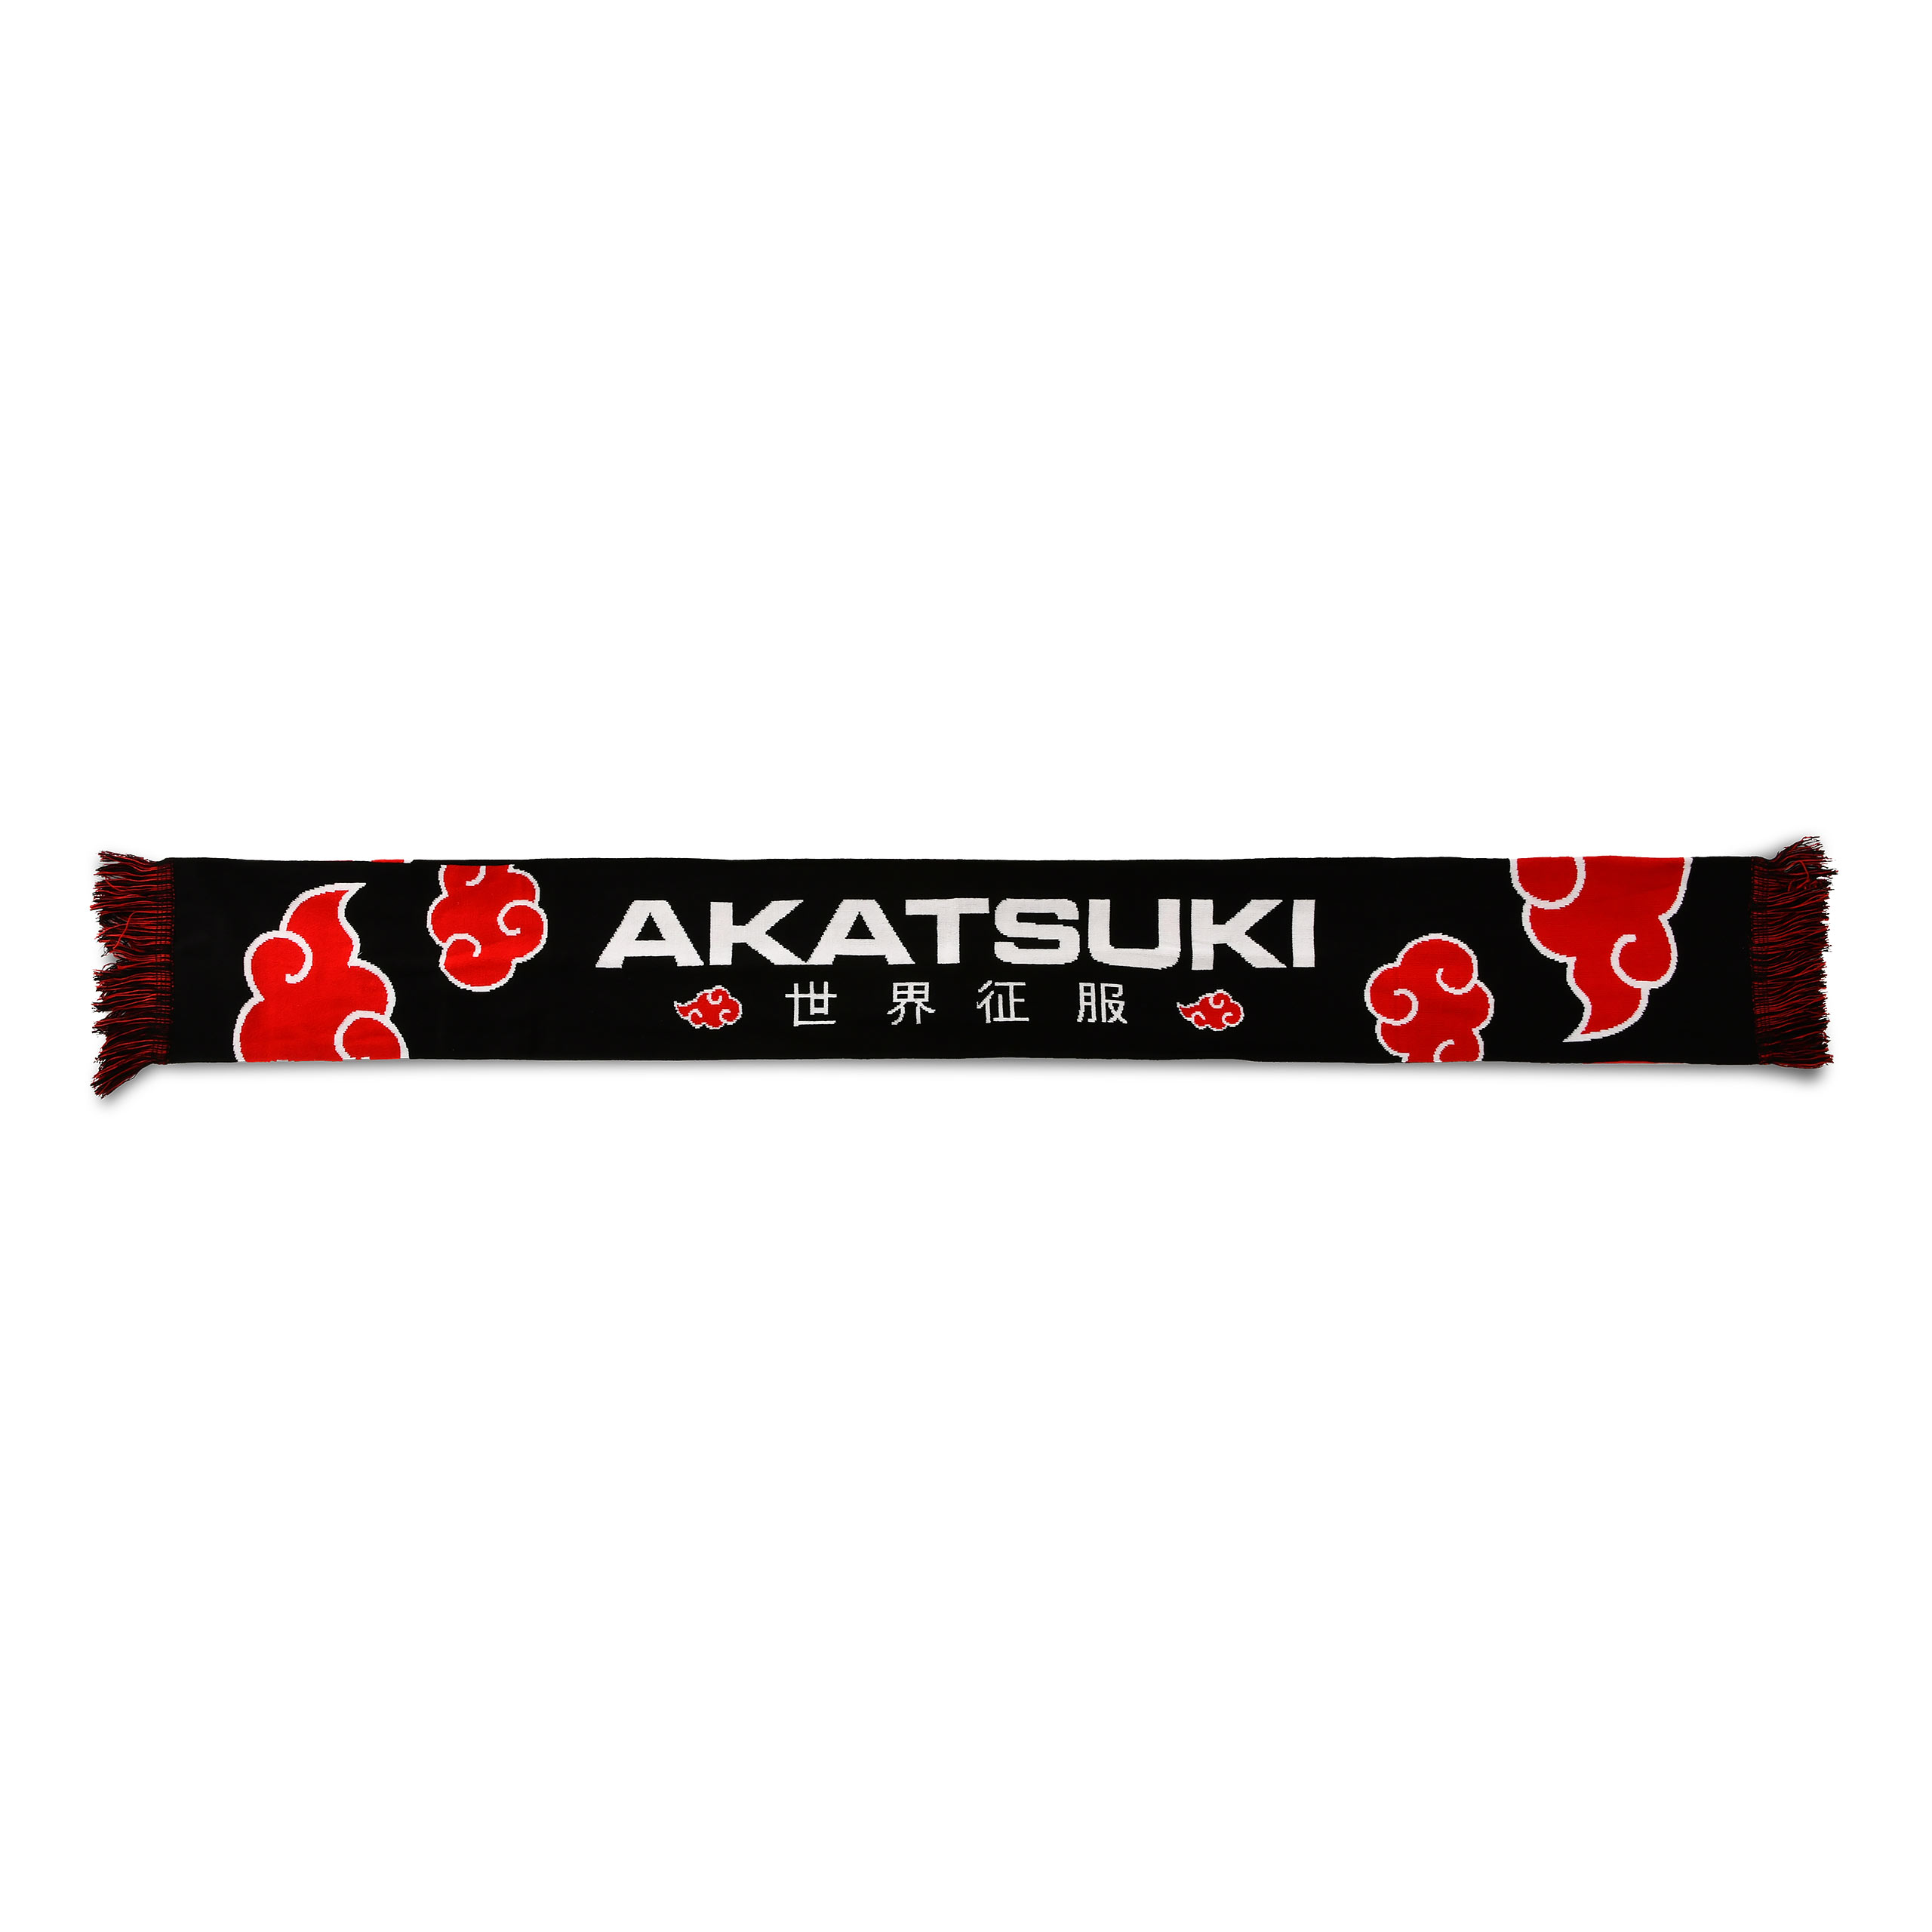 Naruto - Akatsuki Scarf